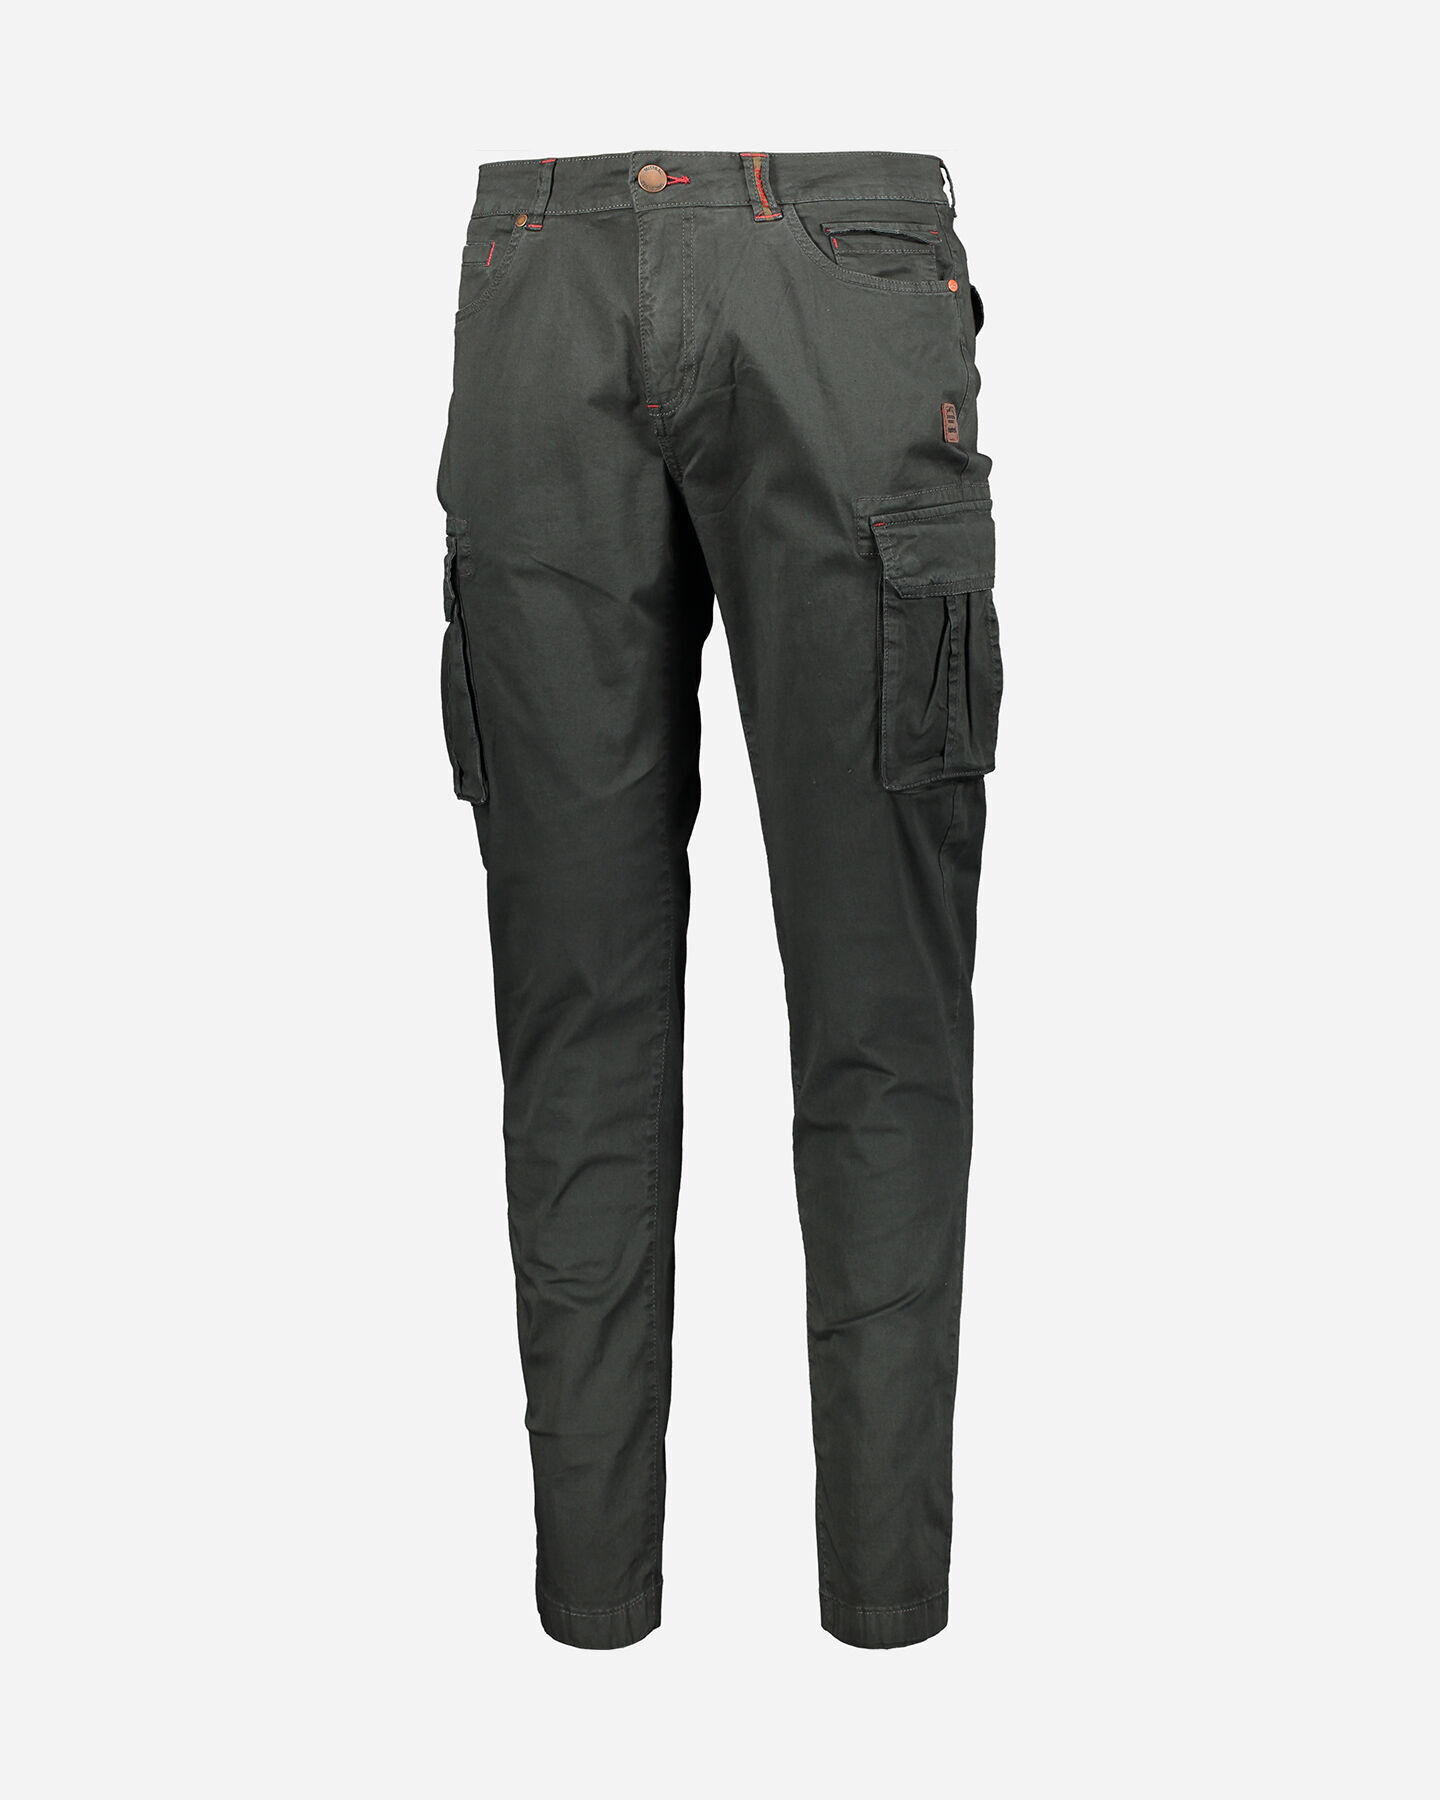  Pantalone MISTRAL TASCONATO M S4087950|910|46 scatto 4